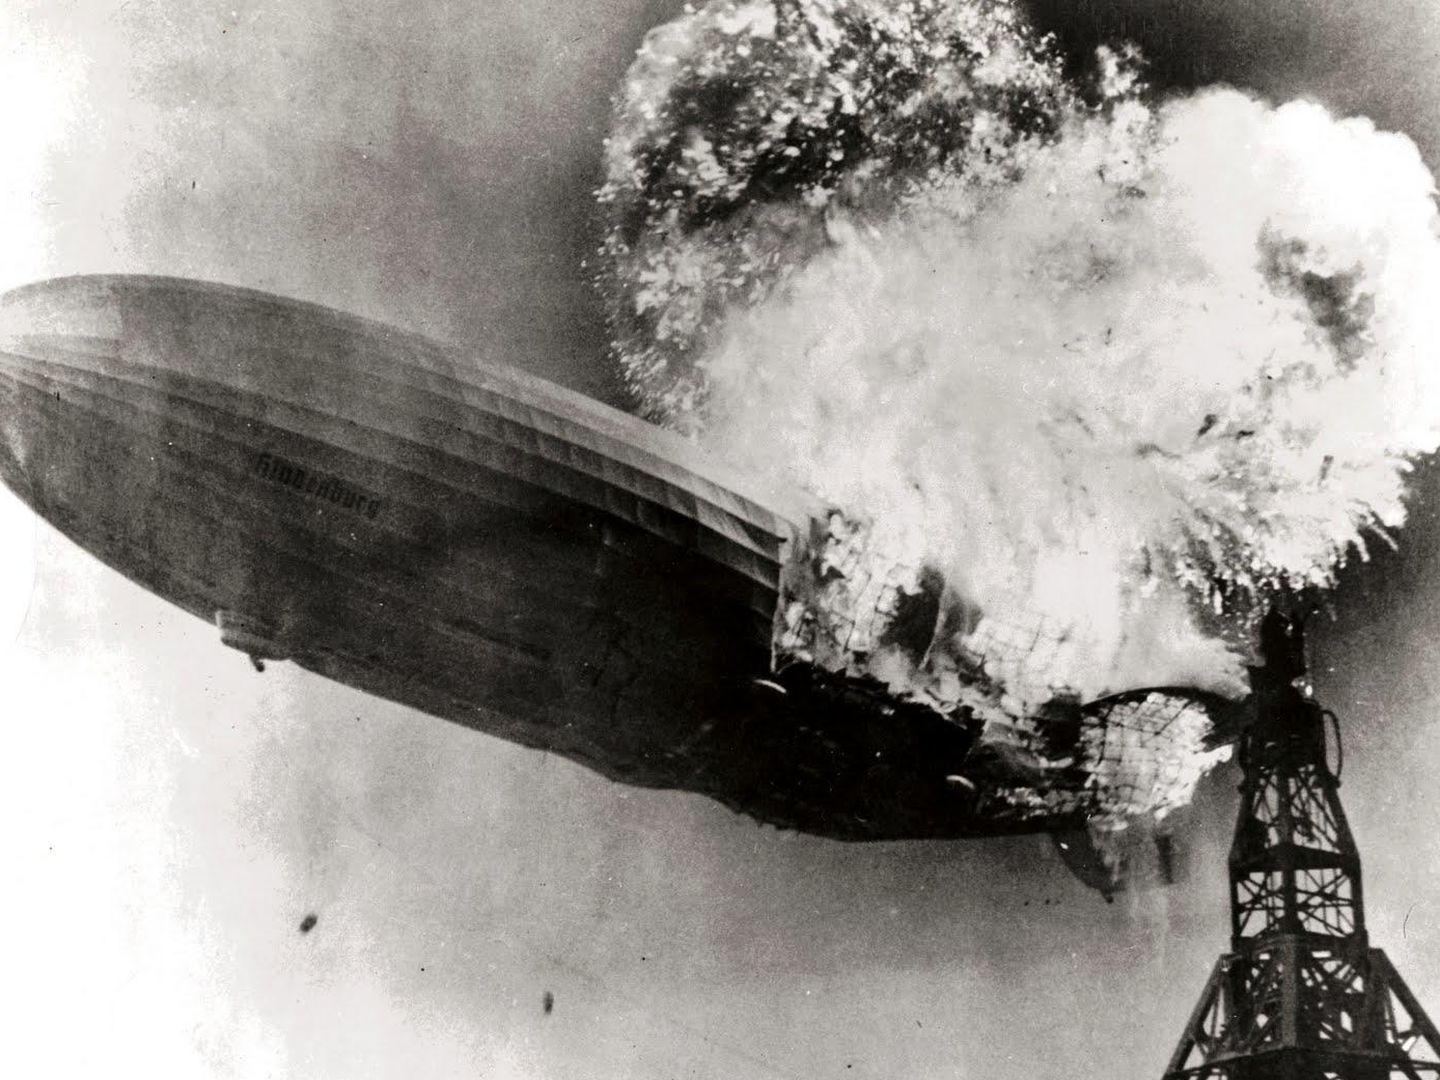 El desastre del Hindenburg causado por una chispa que encendió el hidrógeno que le hacía flotar.